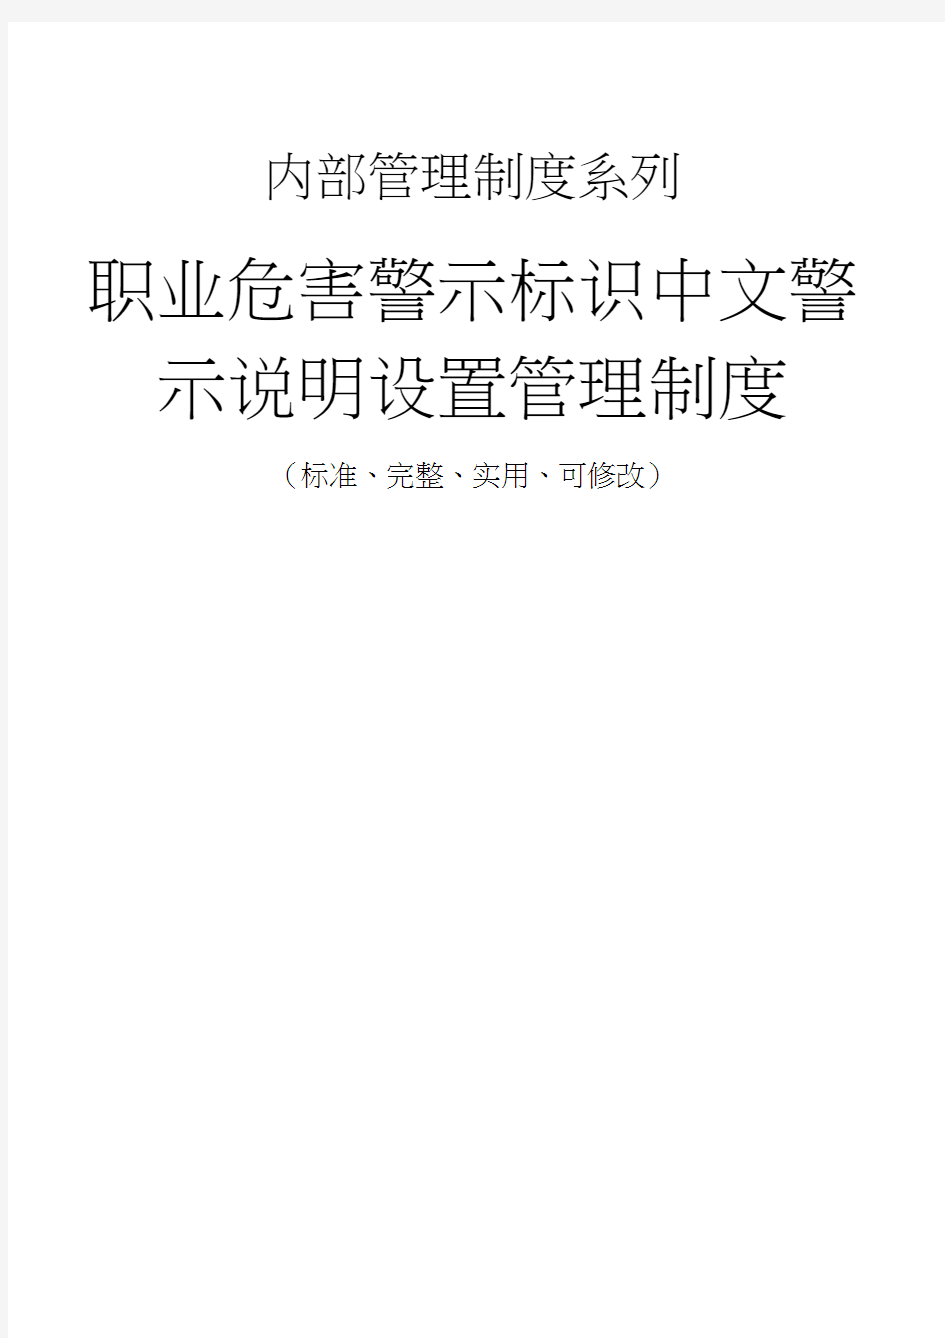 职业危害警示标识中文警示说明设置管理制度